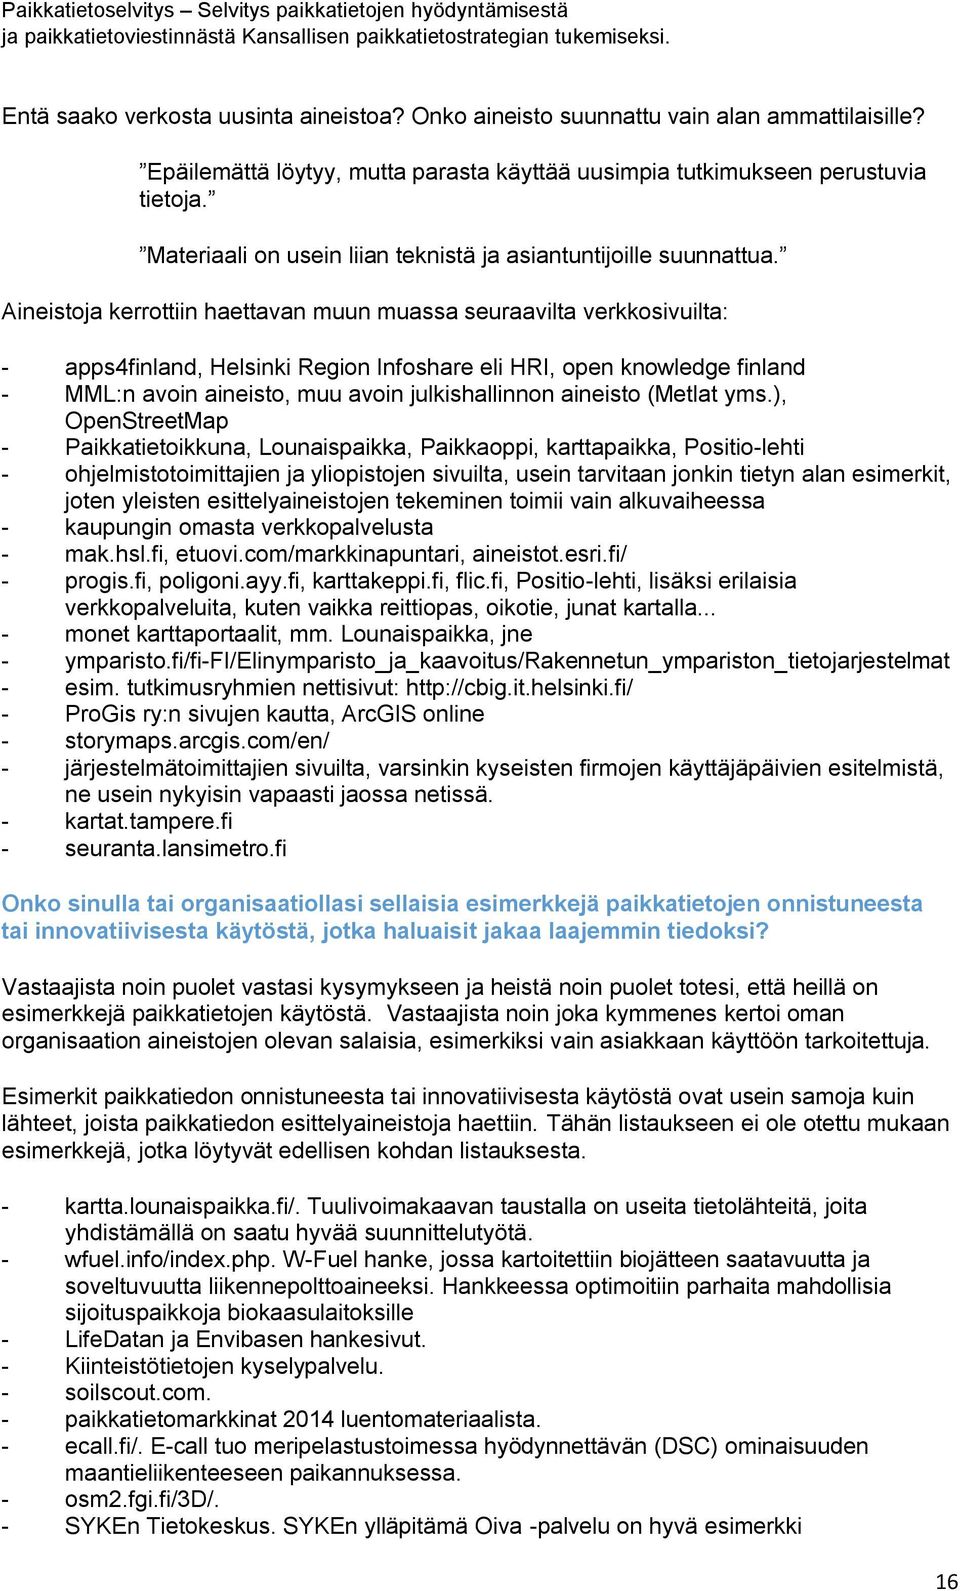 Aineistoja kerrottiin haettavan muun muassa seuraavilta verkkosivuilta: - apps4finland, Helsinki Region Infoshare eli HRI, open knowledge finland - MML:n avoin aineisto, muu avoin julkishallinnon